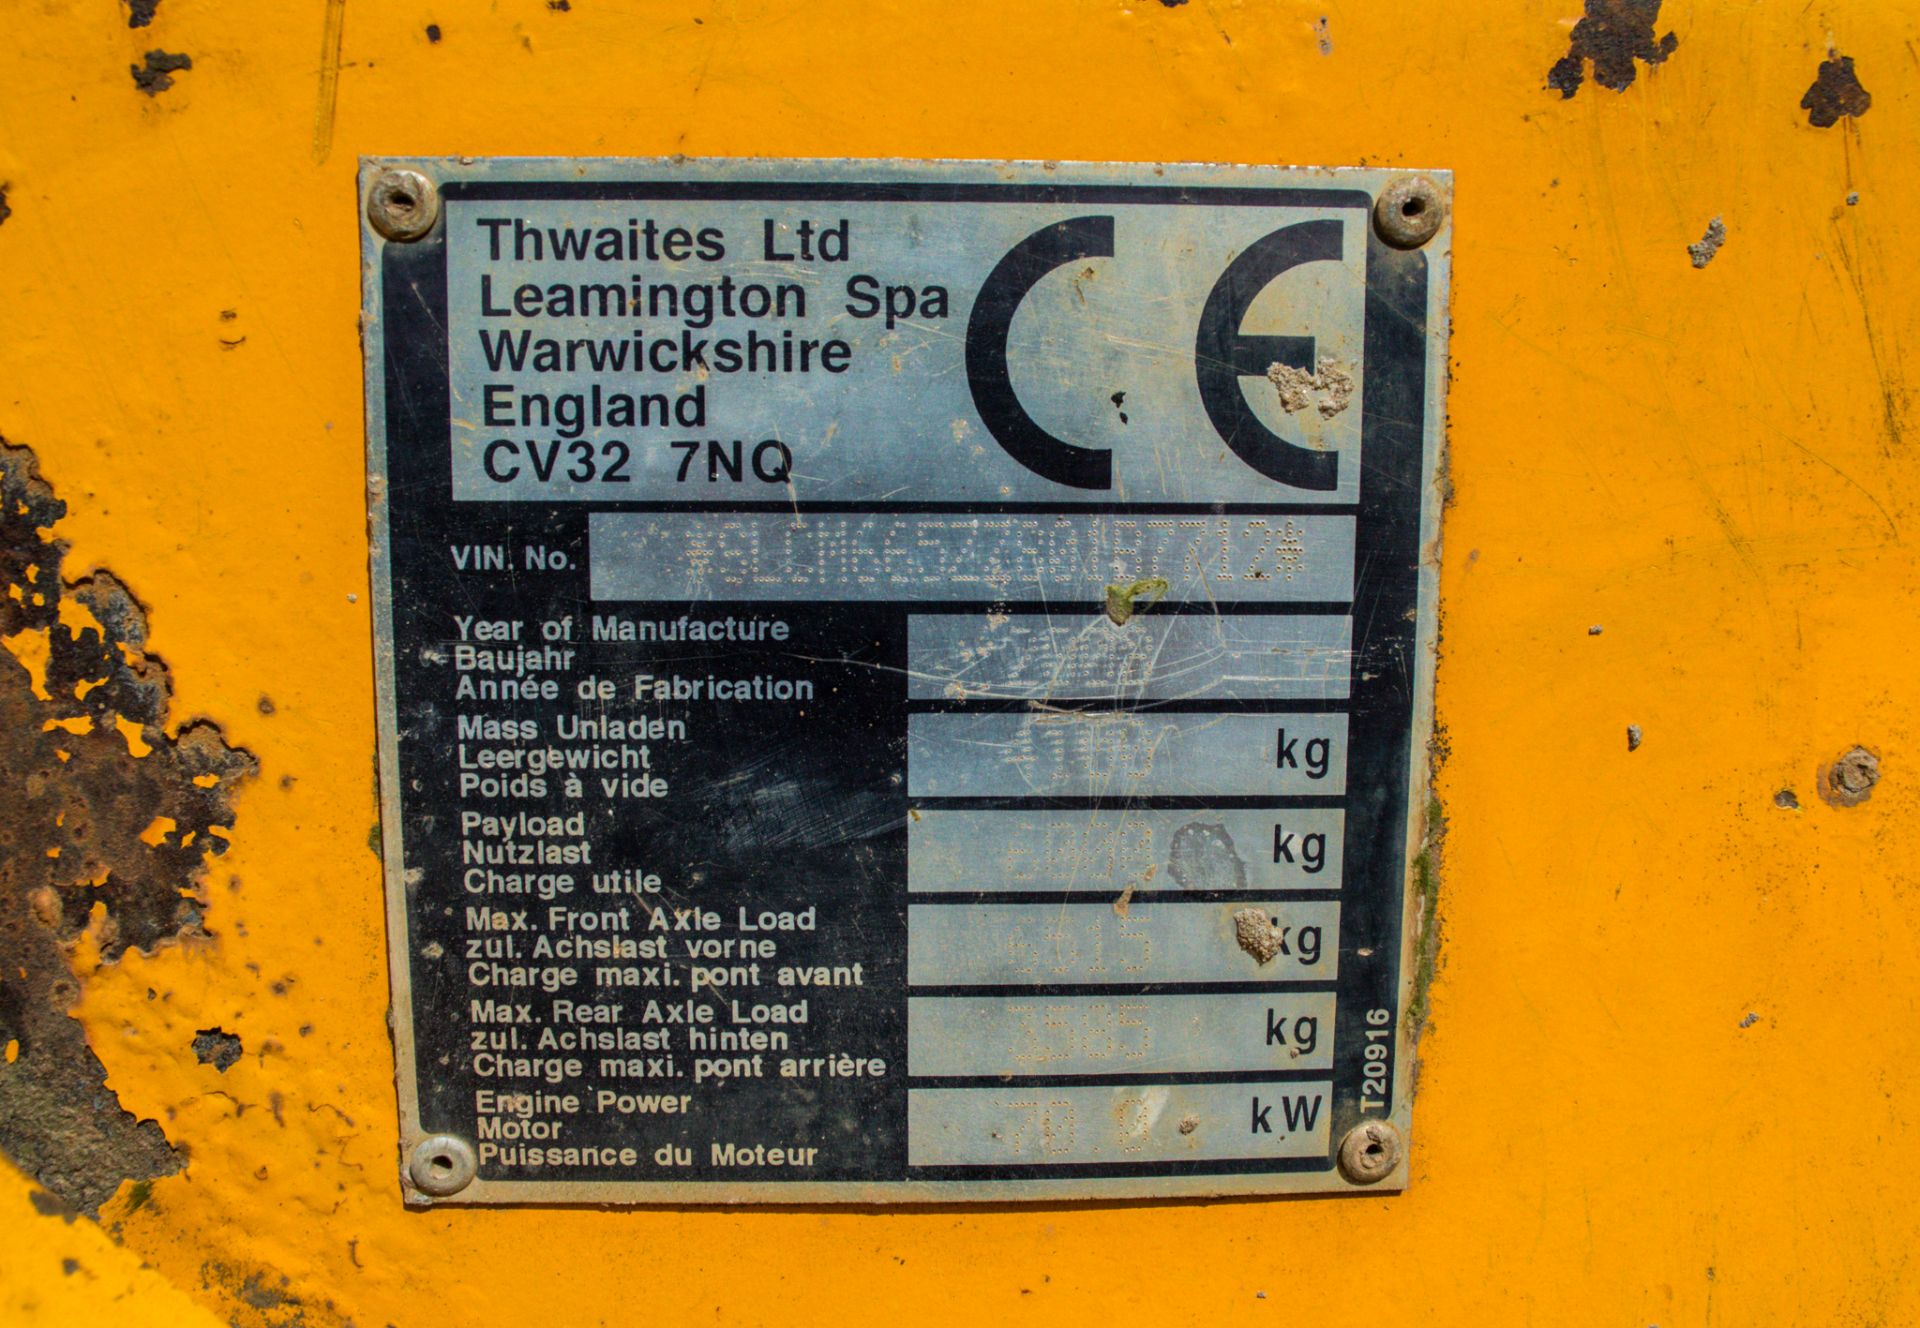 Thwaites 6 tonne straight skip dumper Year: 2008 S/N: 801B7712 Recorded Hours: 3987 DU14 - Image 21 of 21